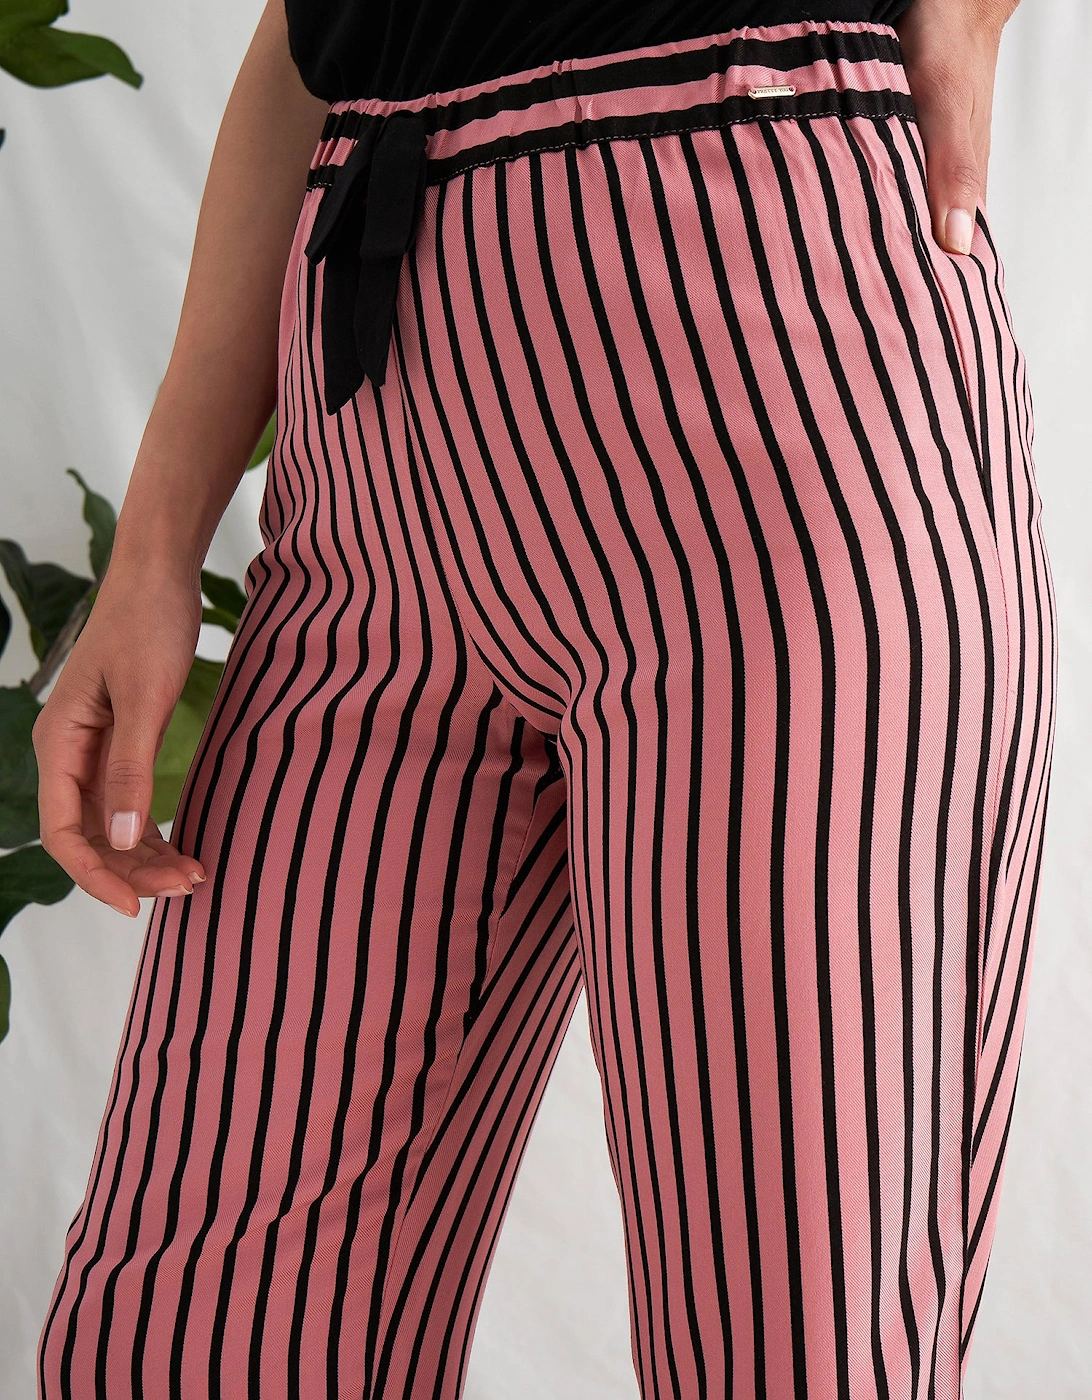 Boyfriend Stripe Trousers in Terracotta/Black